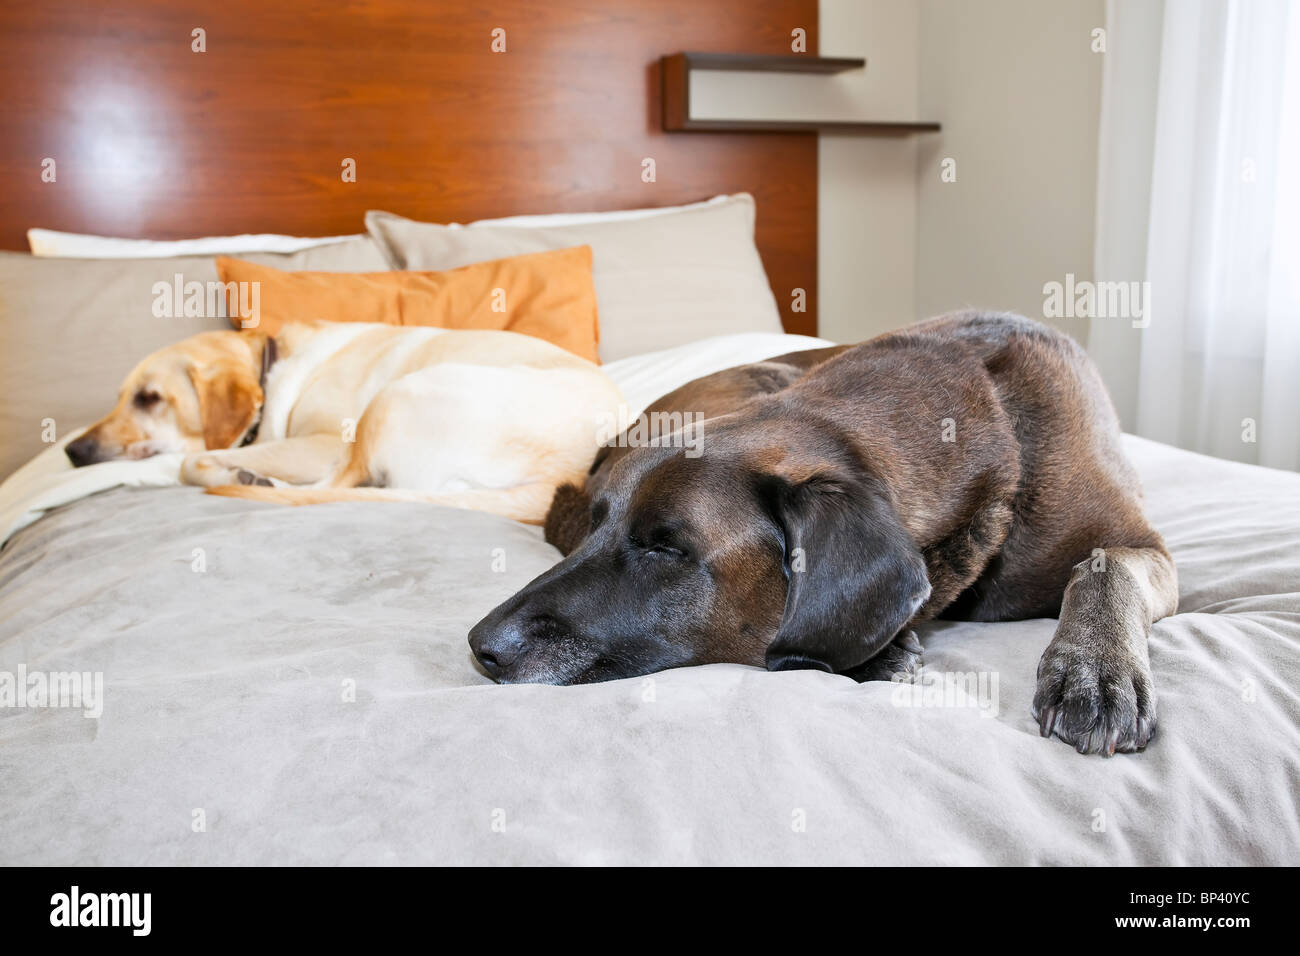 Deux chiens Labrador Retriever dormant dans une chambre d'hôtel qui accepte les animaux domestiques, Banff, Alberta, Canada. Banque D'Images